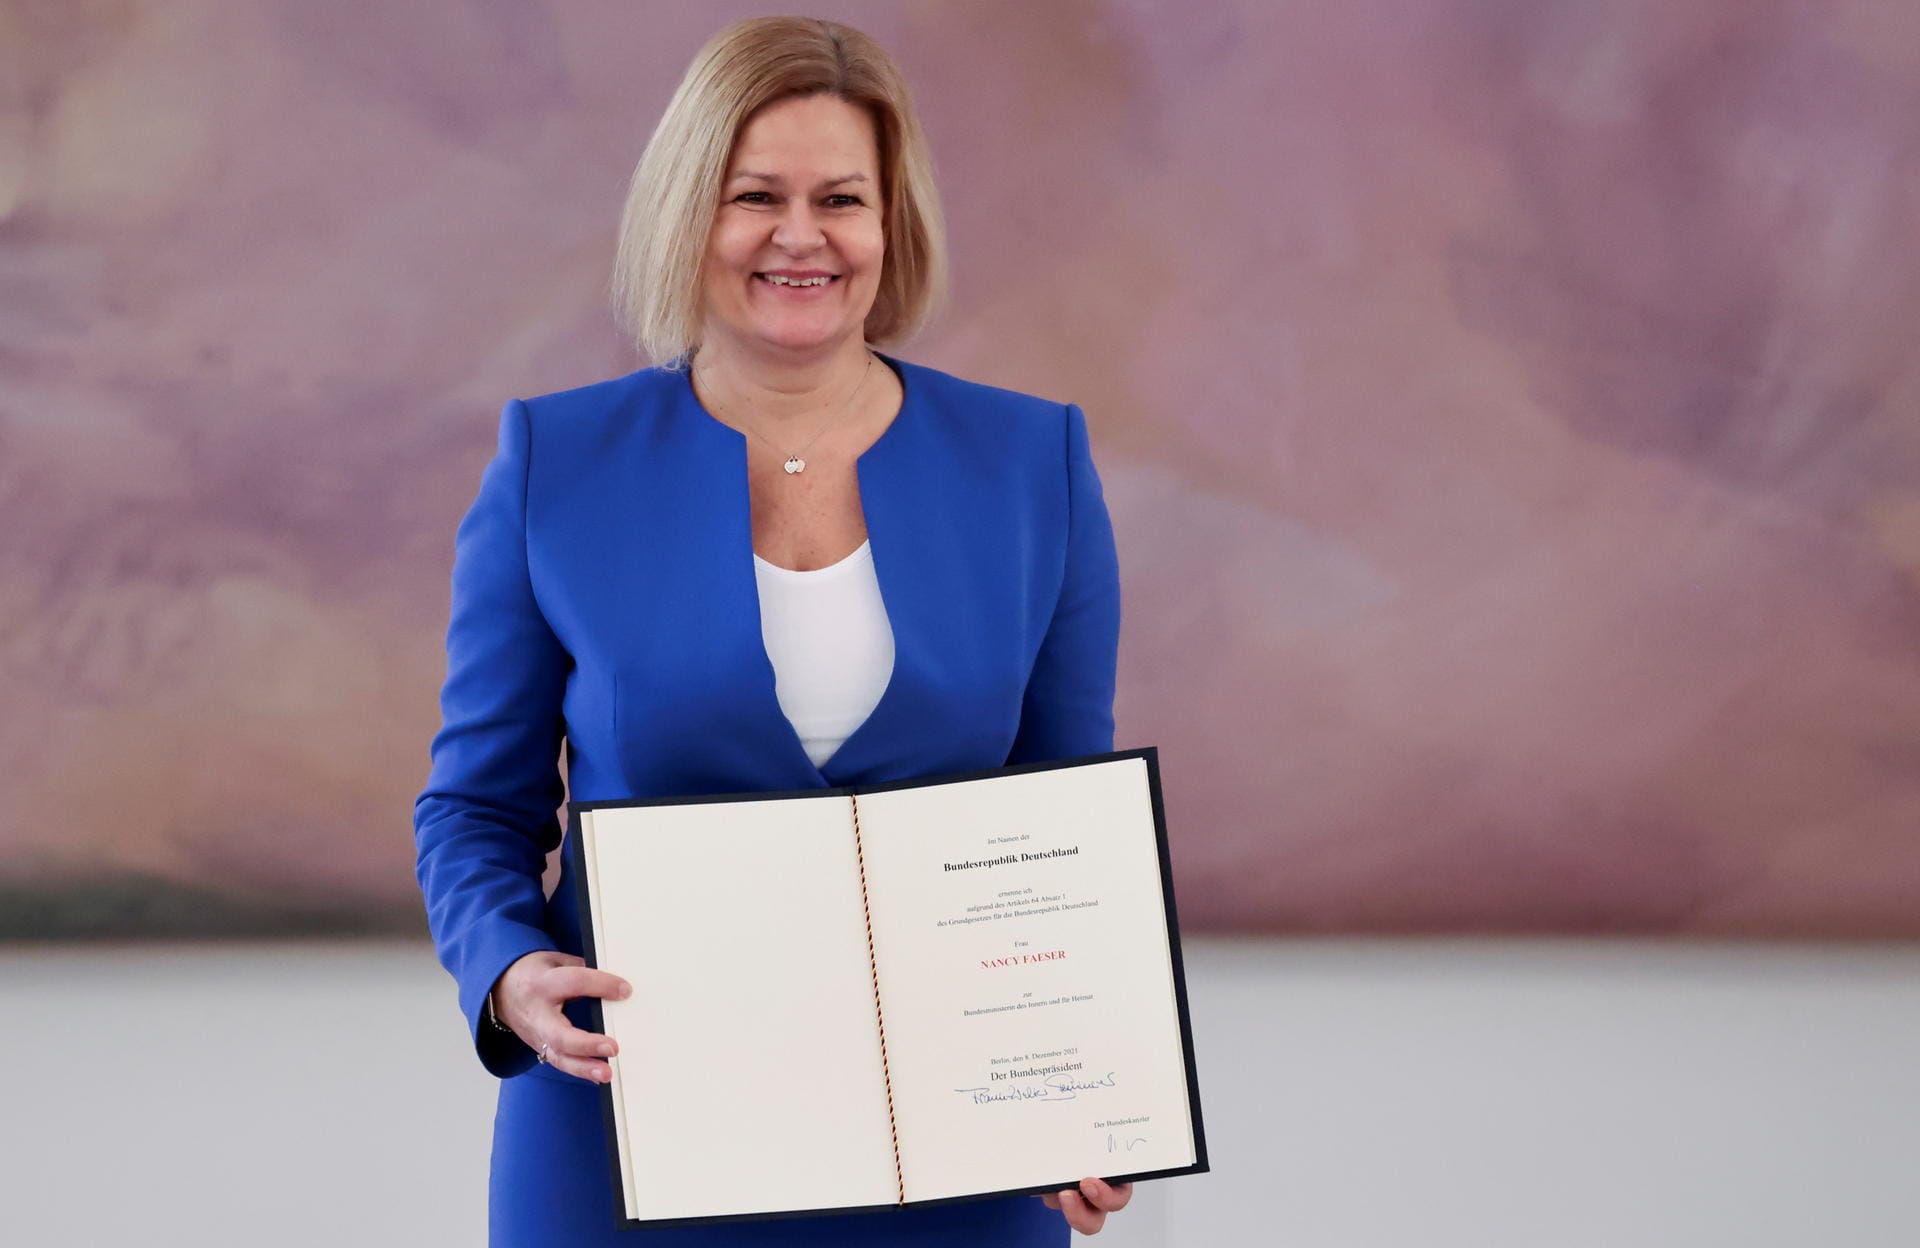 Die hessische SPD-Landesvorsitzende Nancy Faeser wird Innenministerin der neuen Regierung. Ein besonderes Anliegen sei ihr die Bekämpfung des Rechtsextremismus, so die 51-Jährige bei Bekanntgabe der Ministerriege.